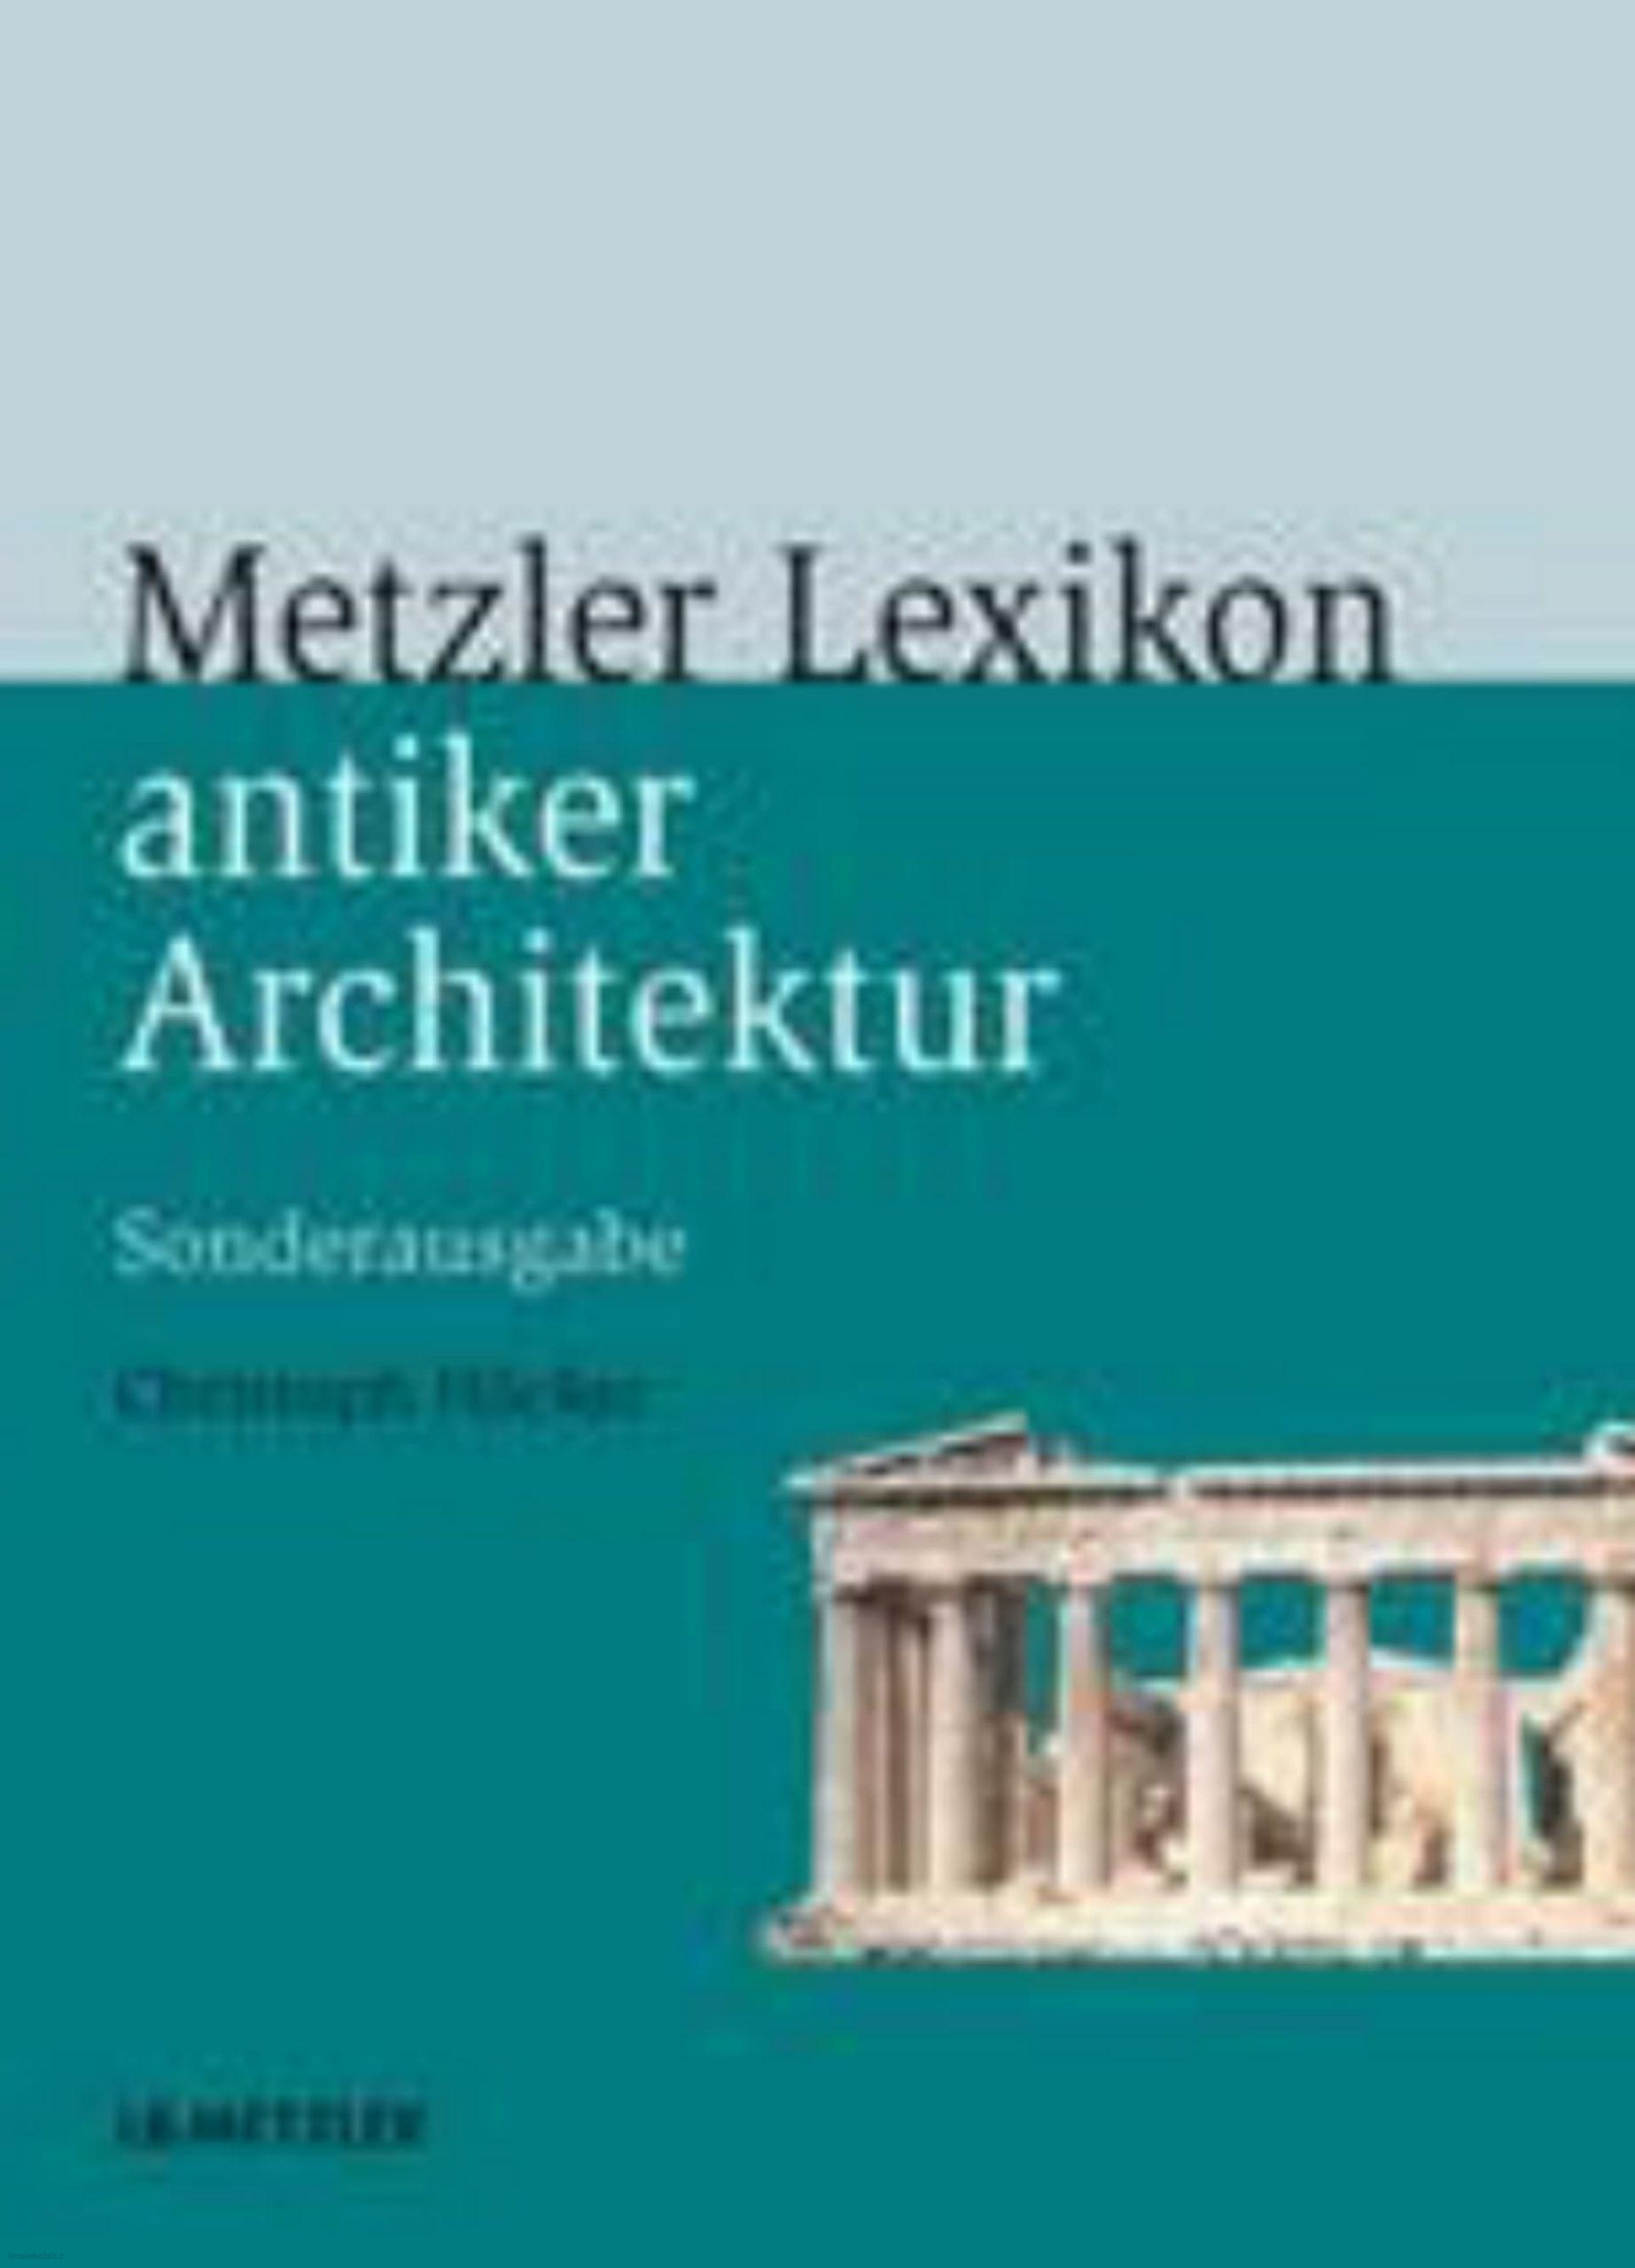 دانلود کتاب آلمانیmetzler lexikon antiker architektur